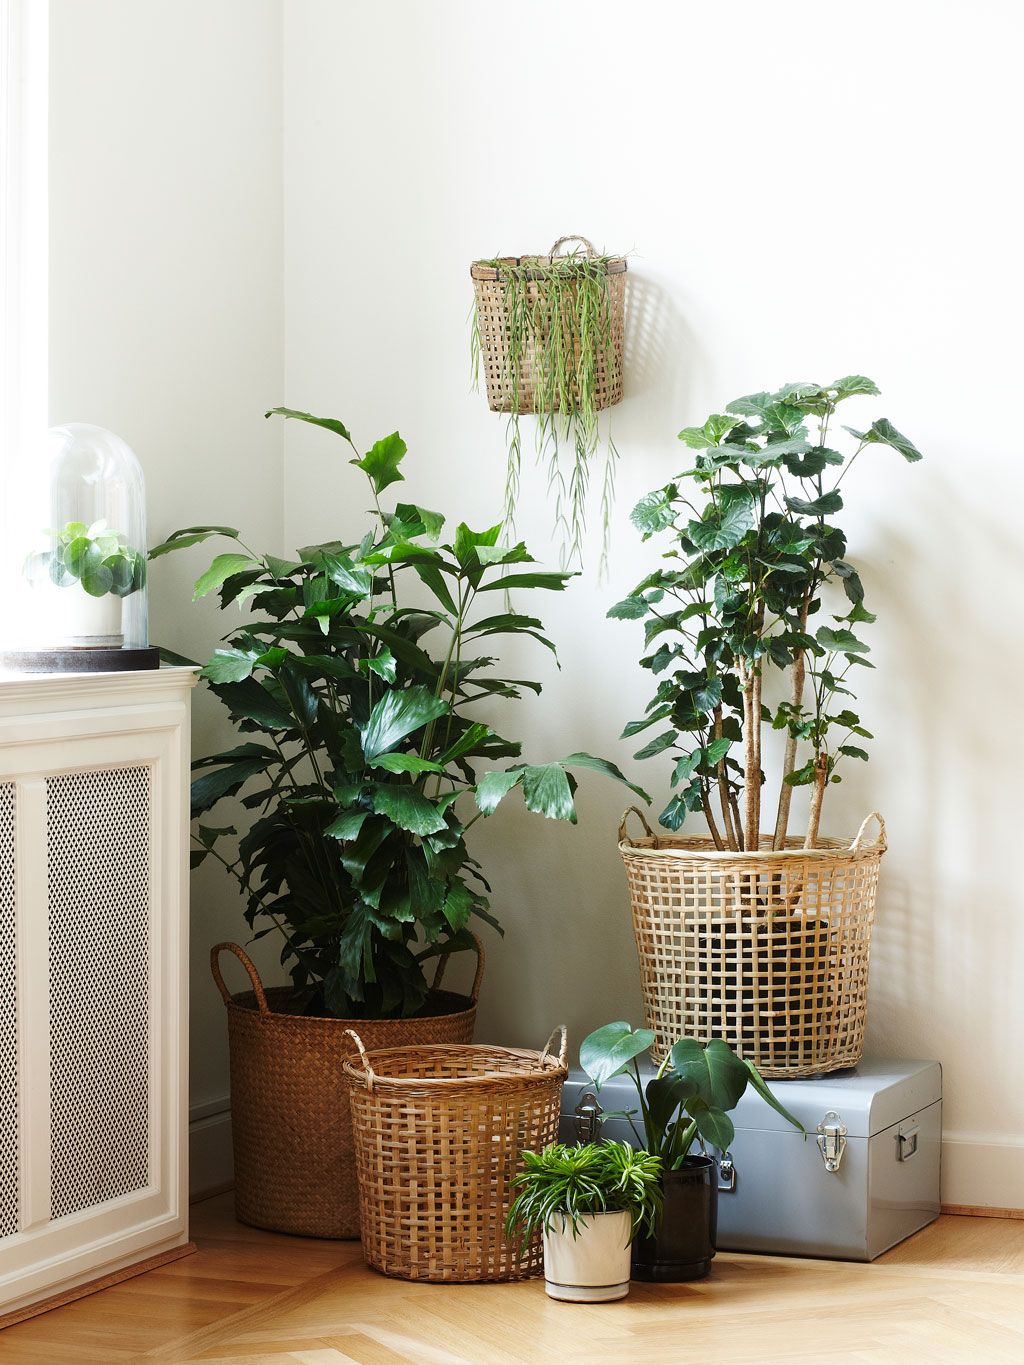 Cómo decorar con plantas de interior: ideas fáciles para toda tu casa